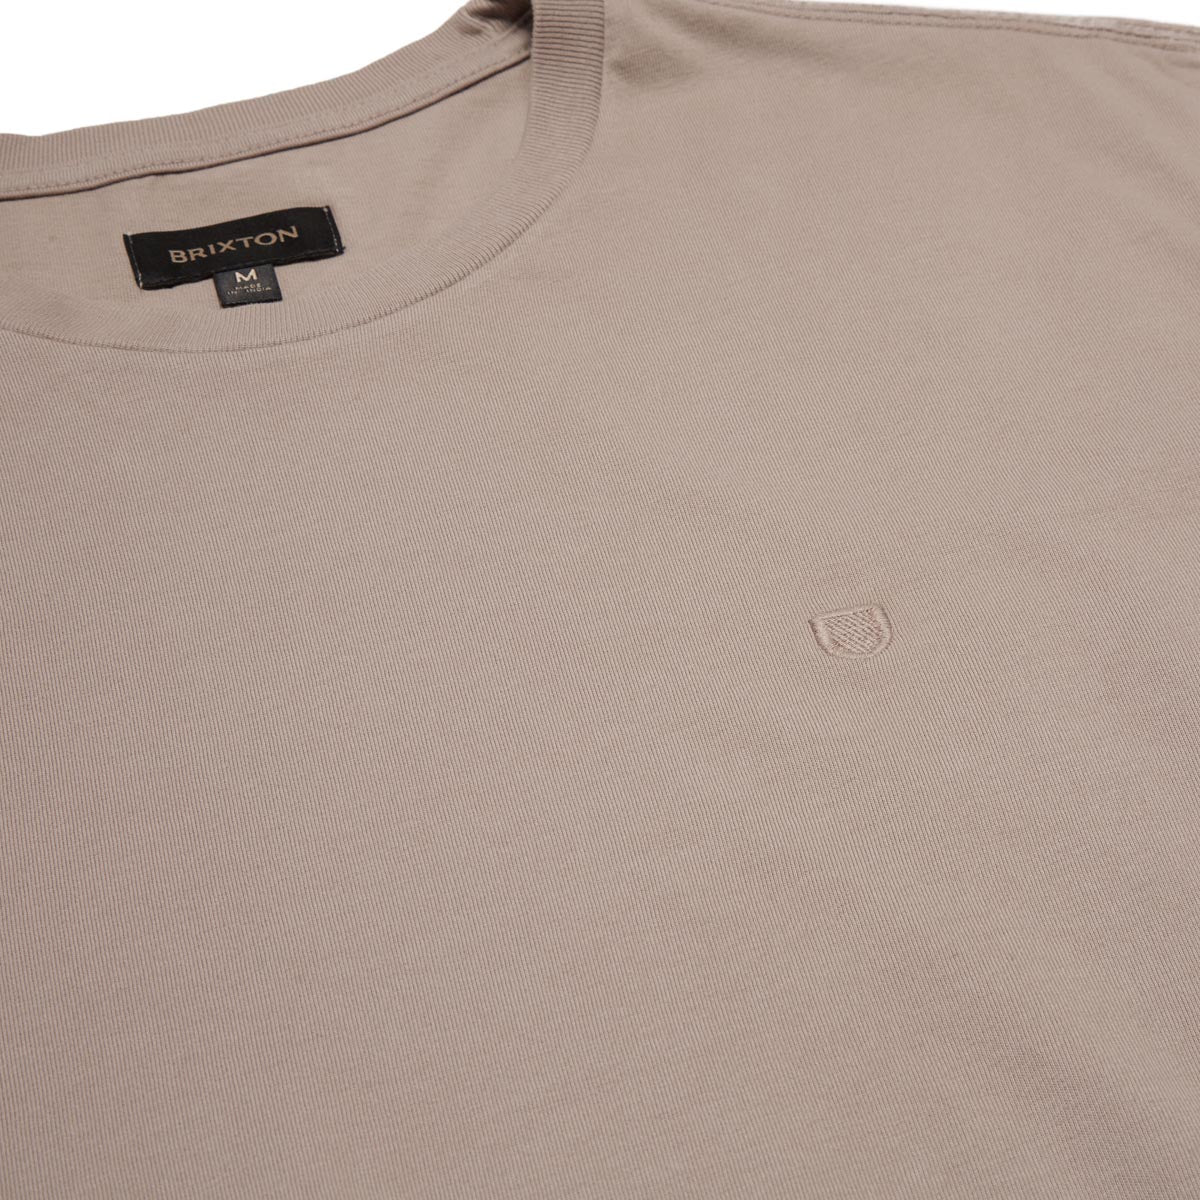 Brixton Vintage Reserve T-Shirt - Cinder Grey Sol Wash image 2